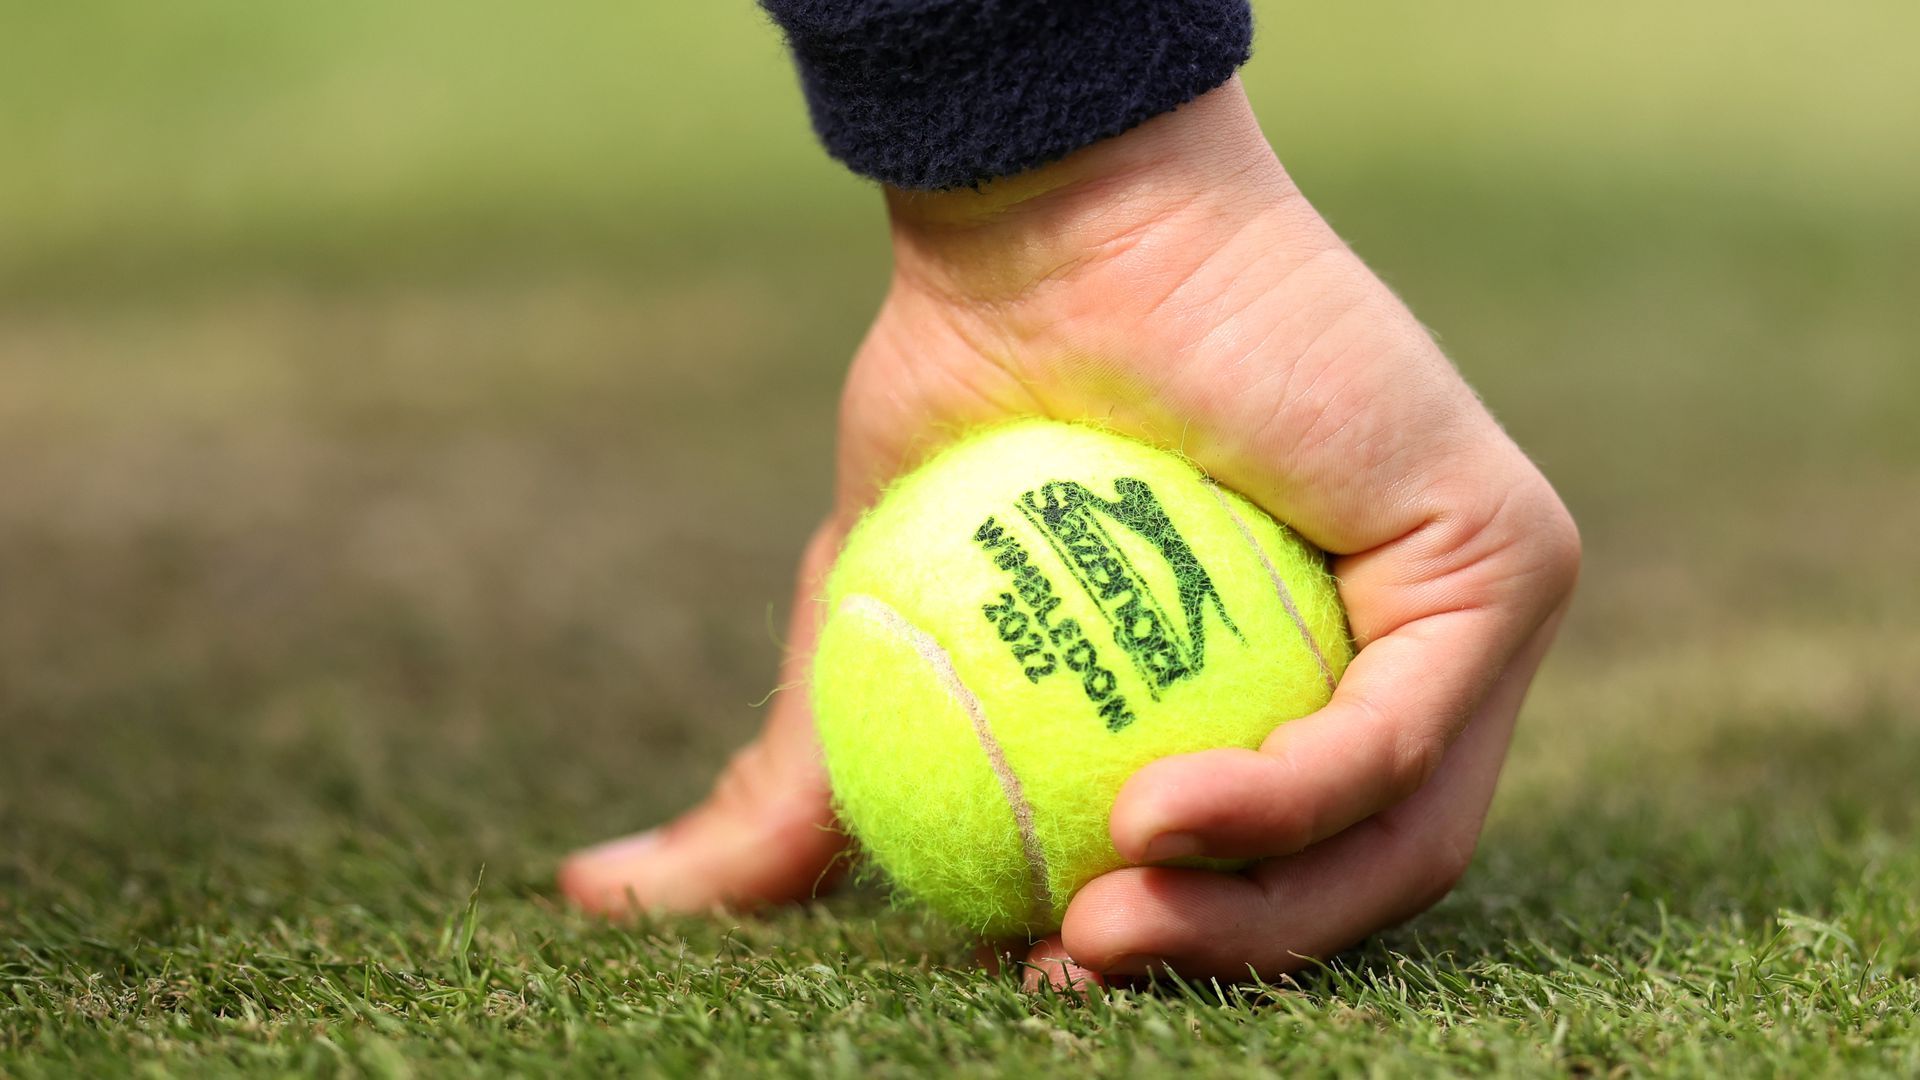 A hand picks up a tennis ball that reads "Wimbledon 2022."